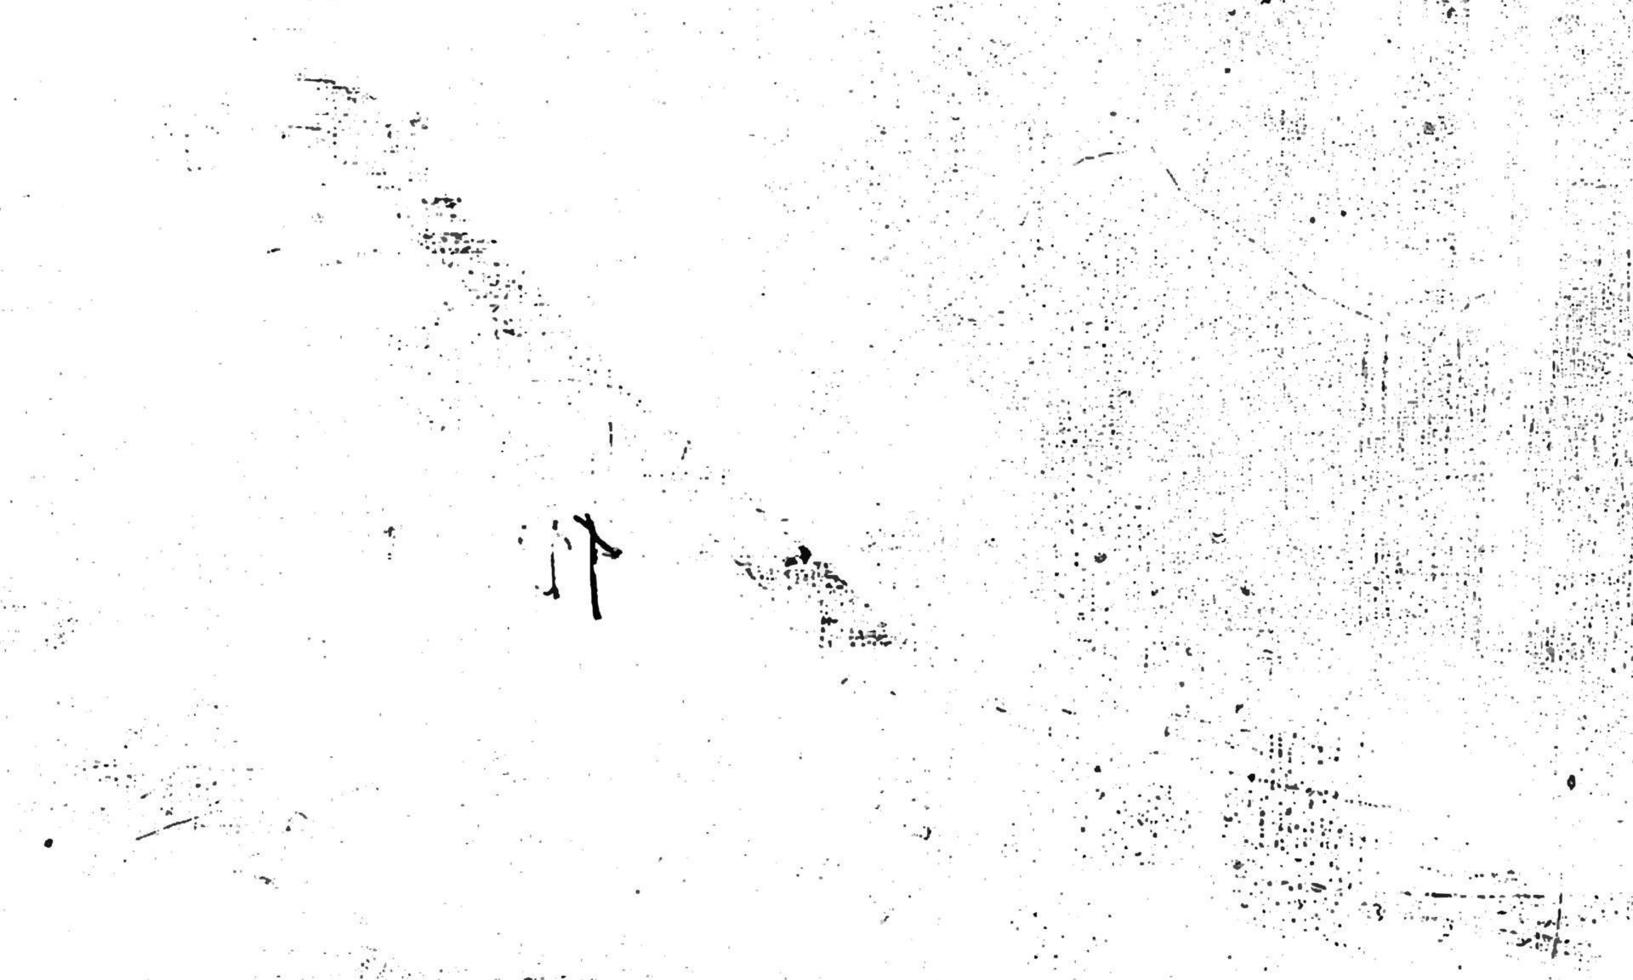 partícula de polvo envejecida grunge blanco y negro. fondo blanco superpuesto abstracto. vector